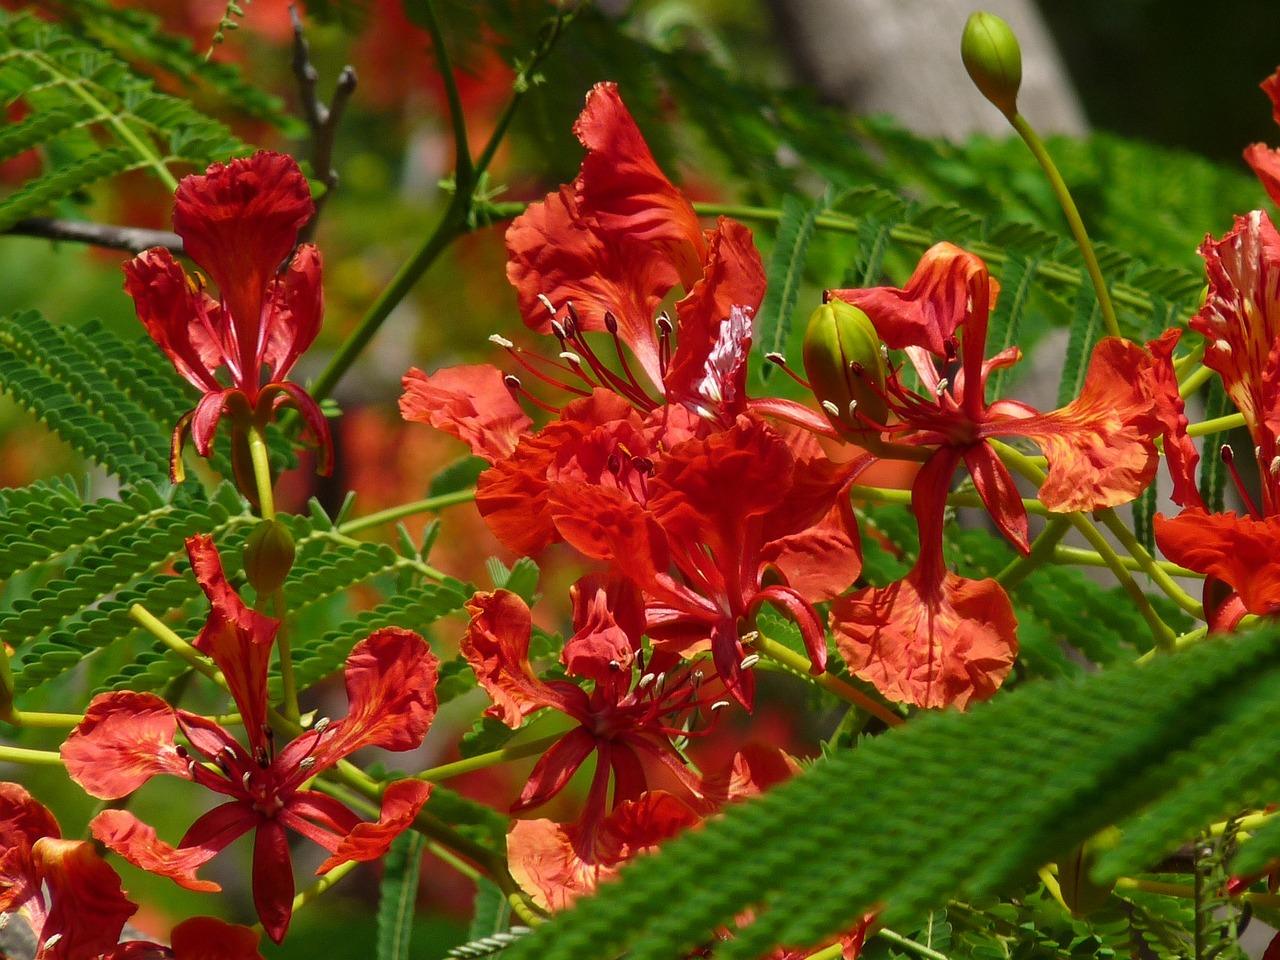 Barbados floral